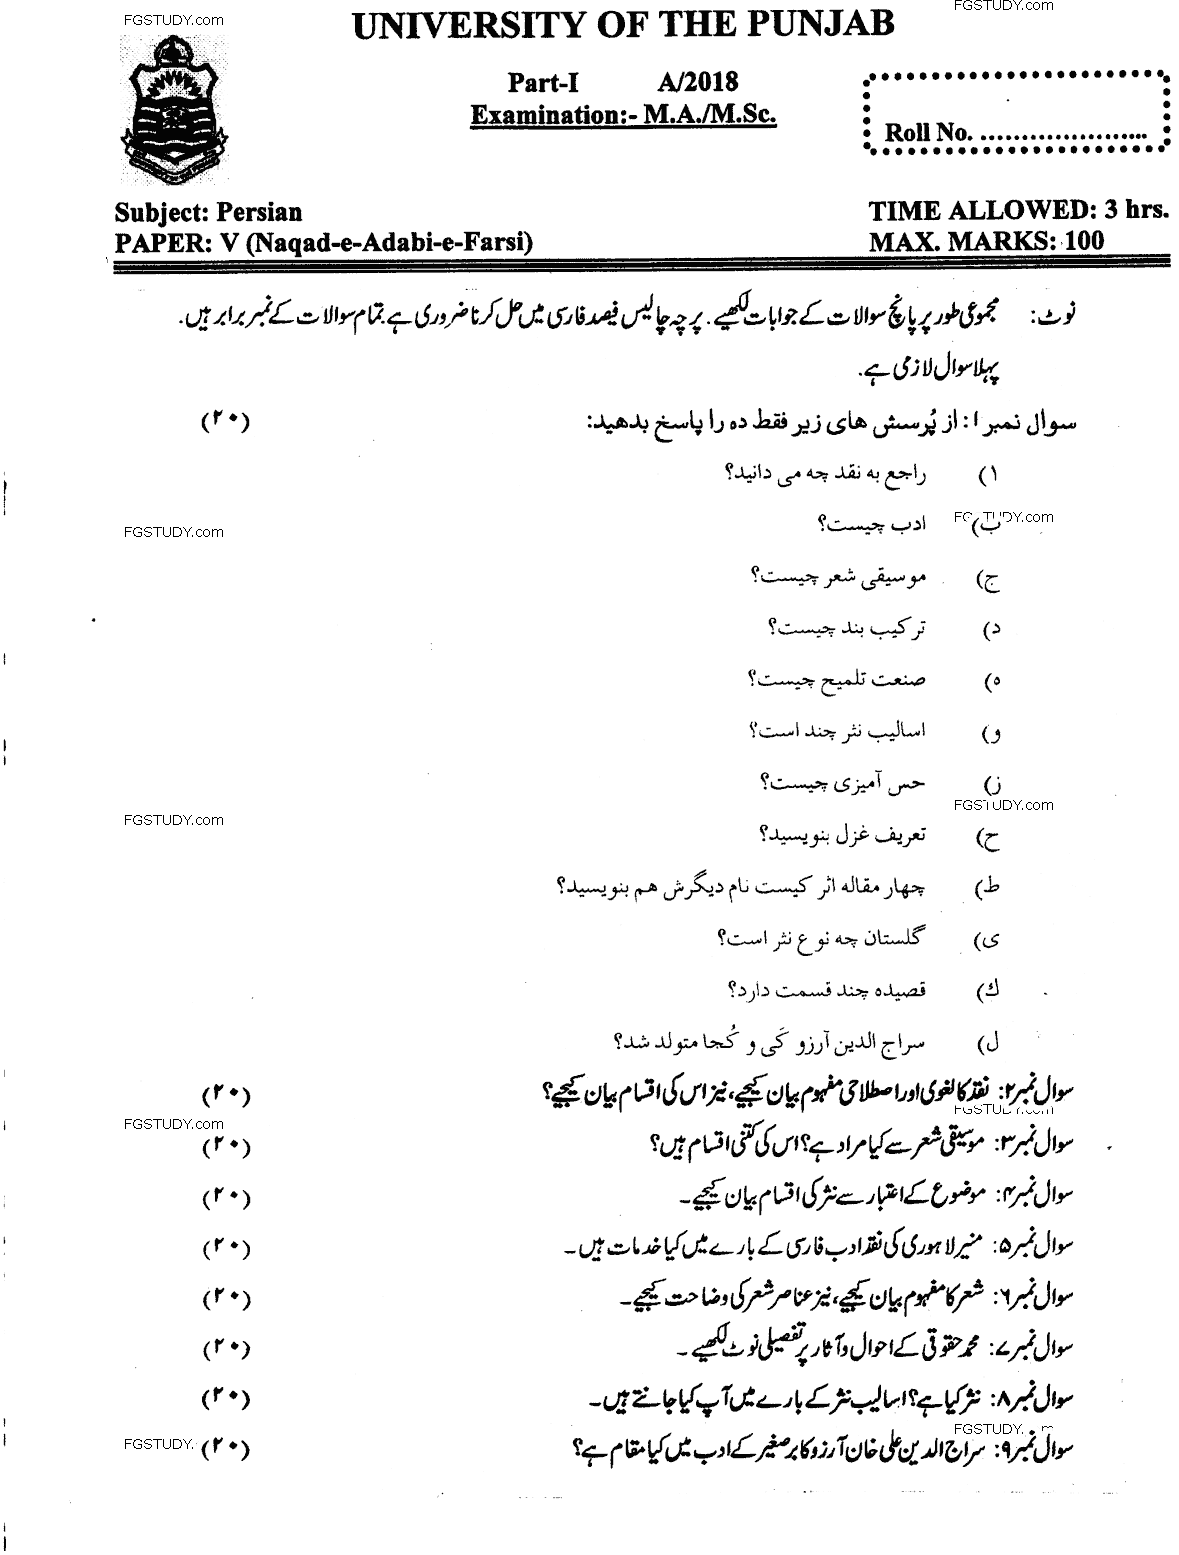 Ma Part 1 Persian Naqad E Adebi E Farsi Past Paper 2018 Punjab University